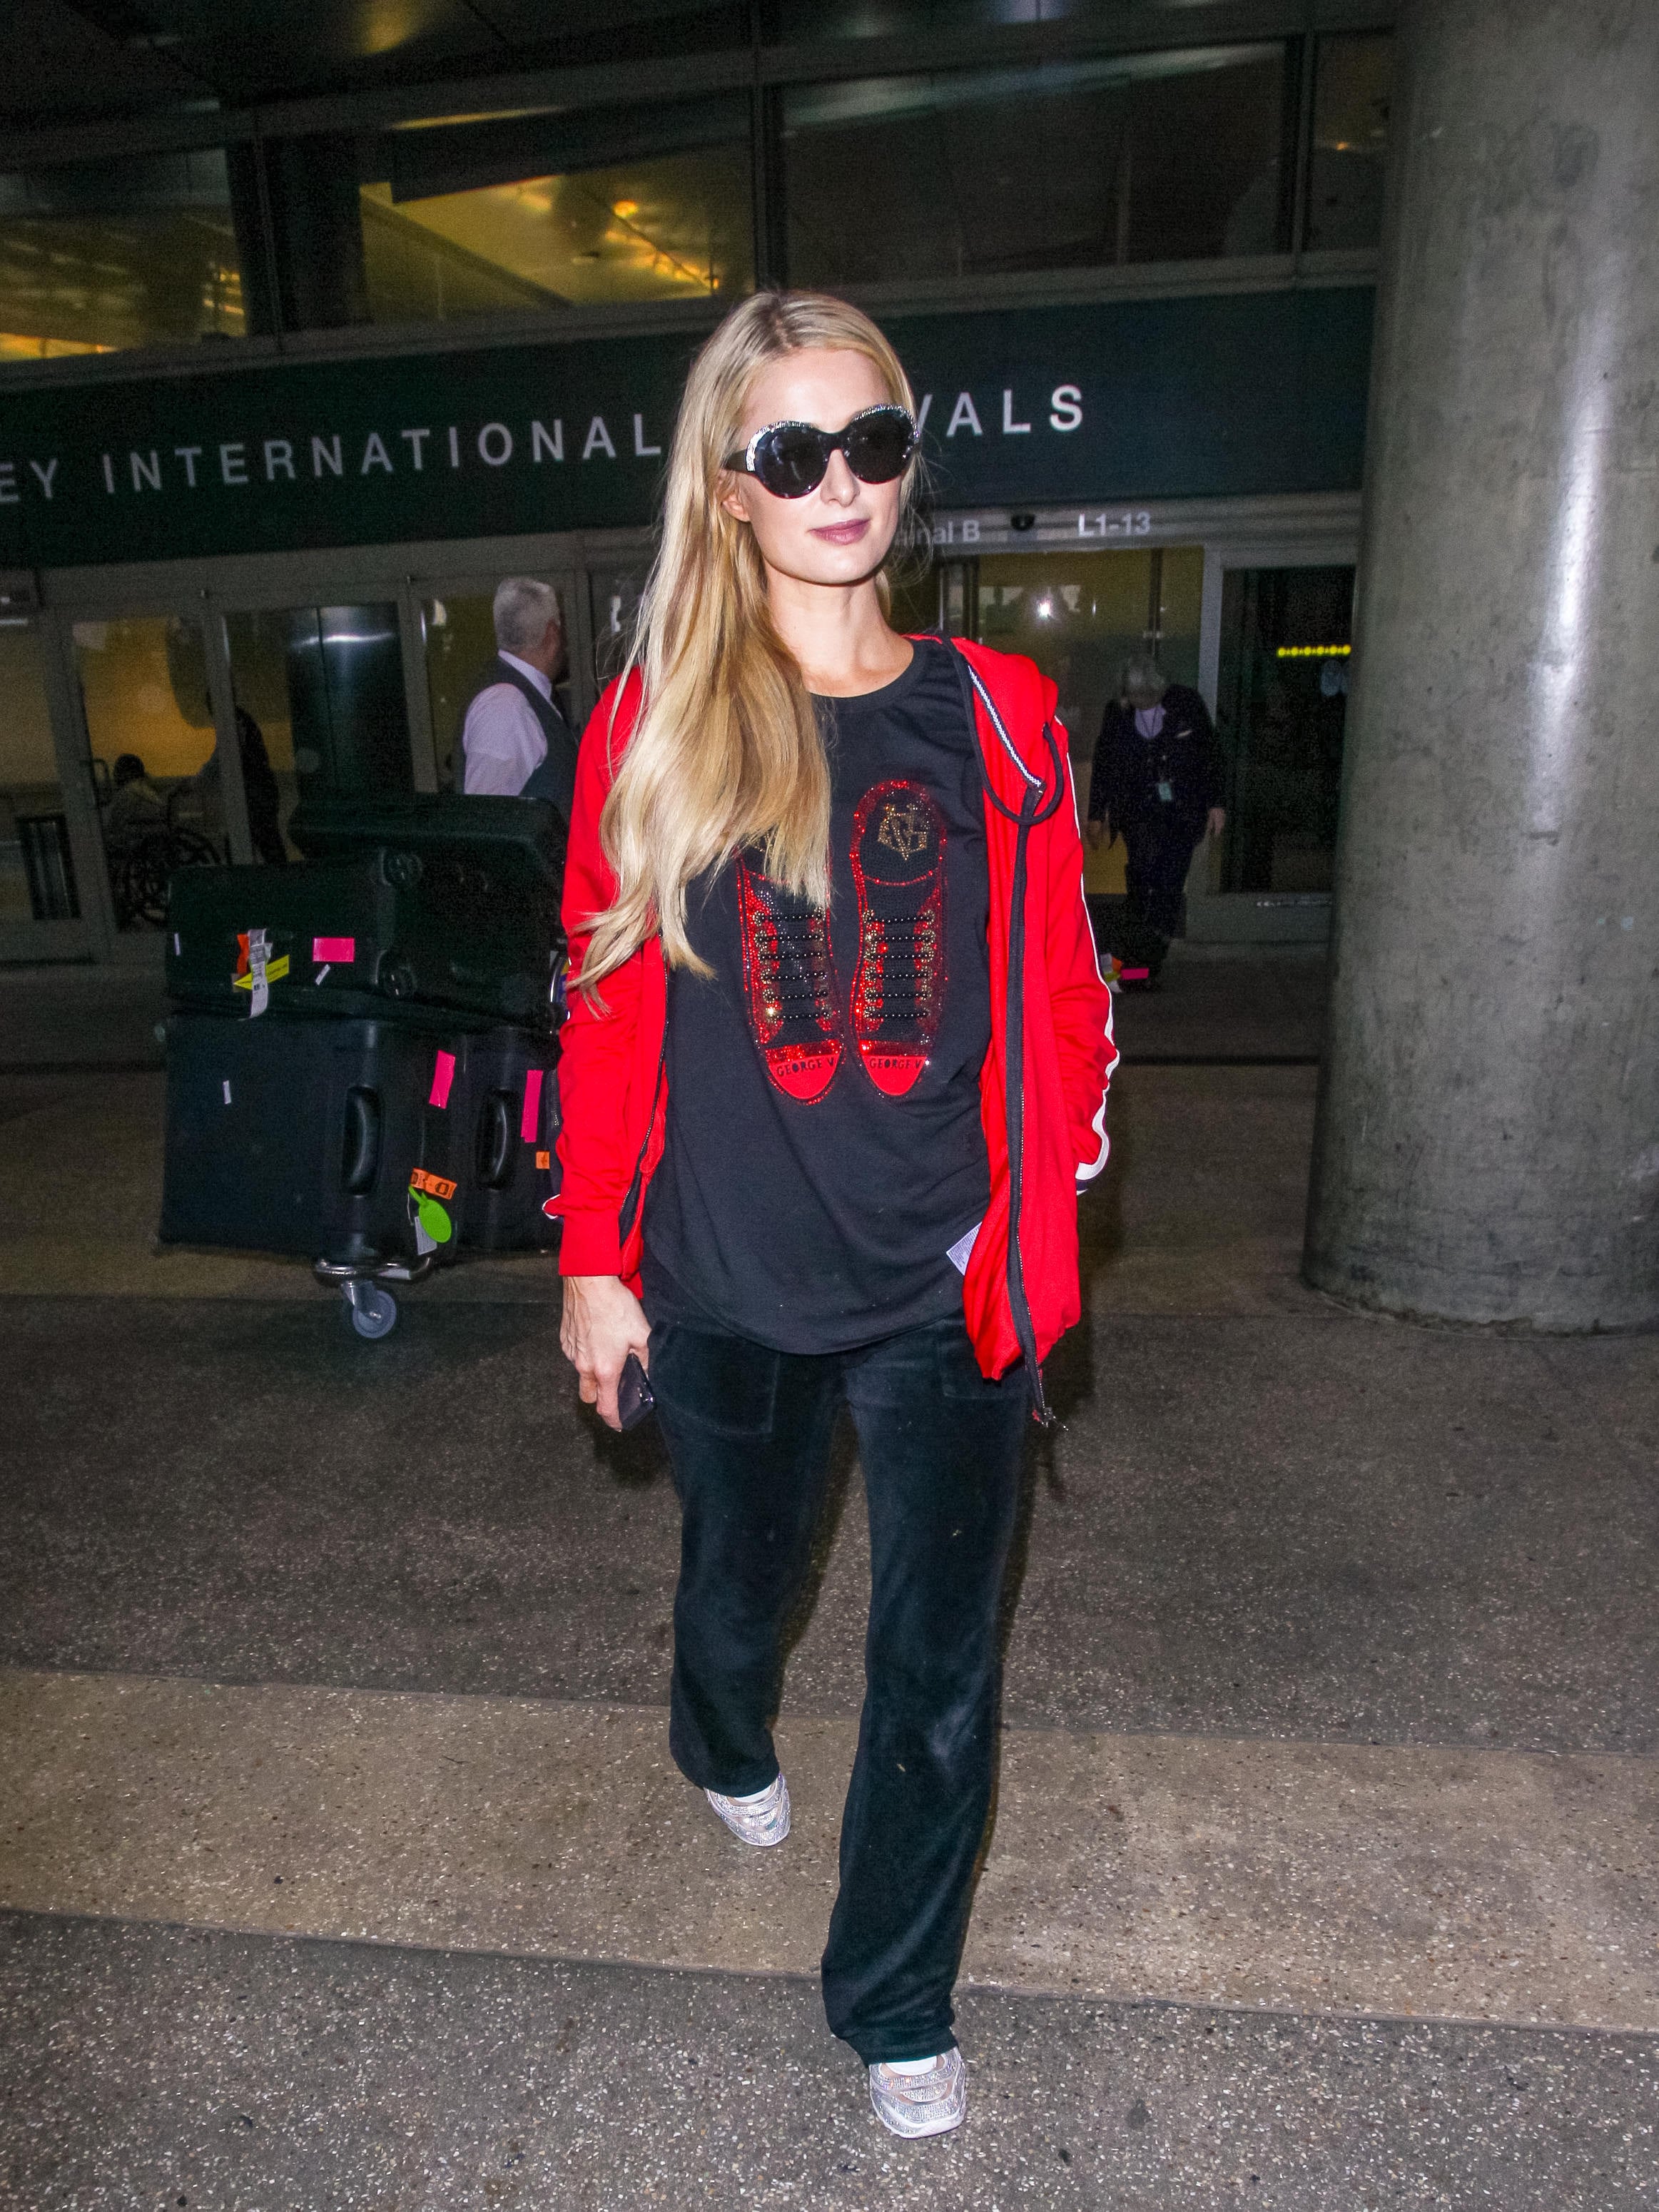 Paris Hilton Talks About the Juicy Couture Tracksuit